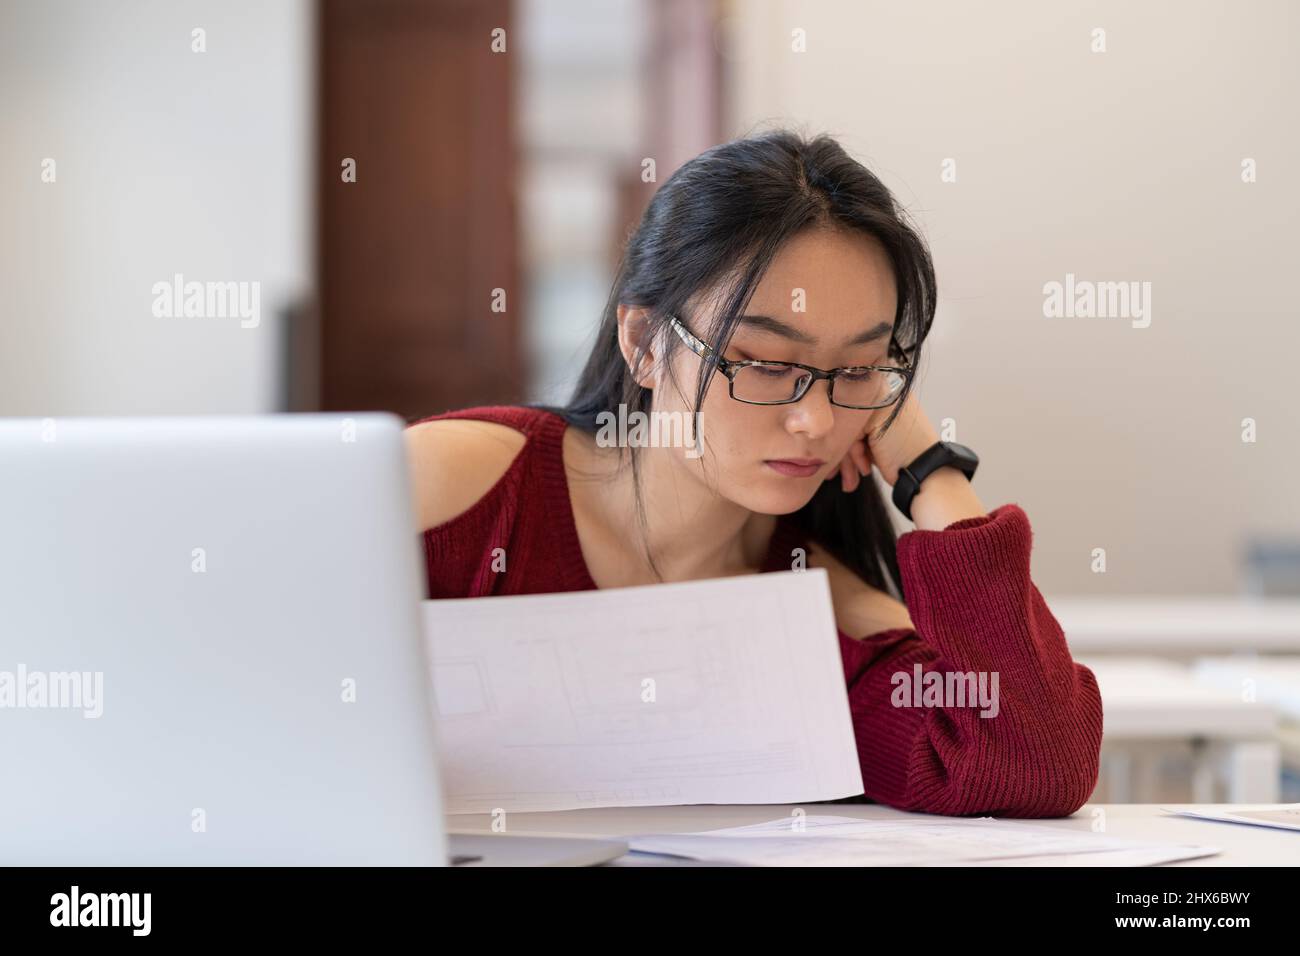 Studentessa asiatica che lavora sodo in glases leggendo disegni architettonici mentre studiava in biblioteca Foto Stock